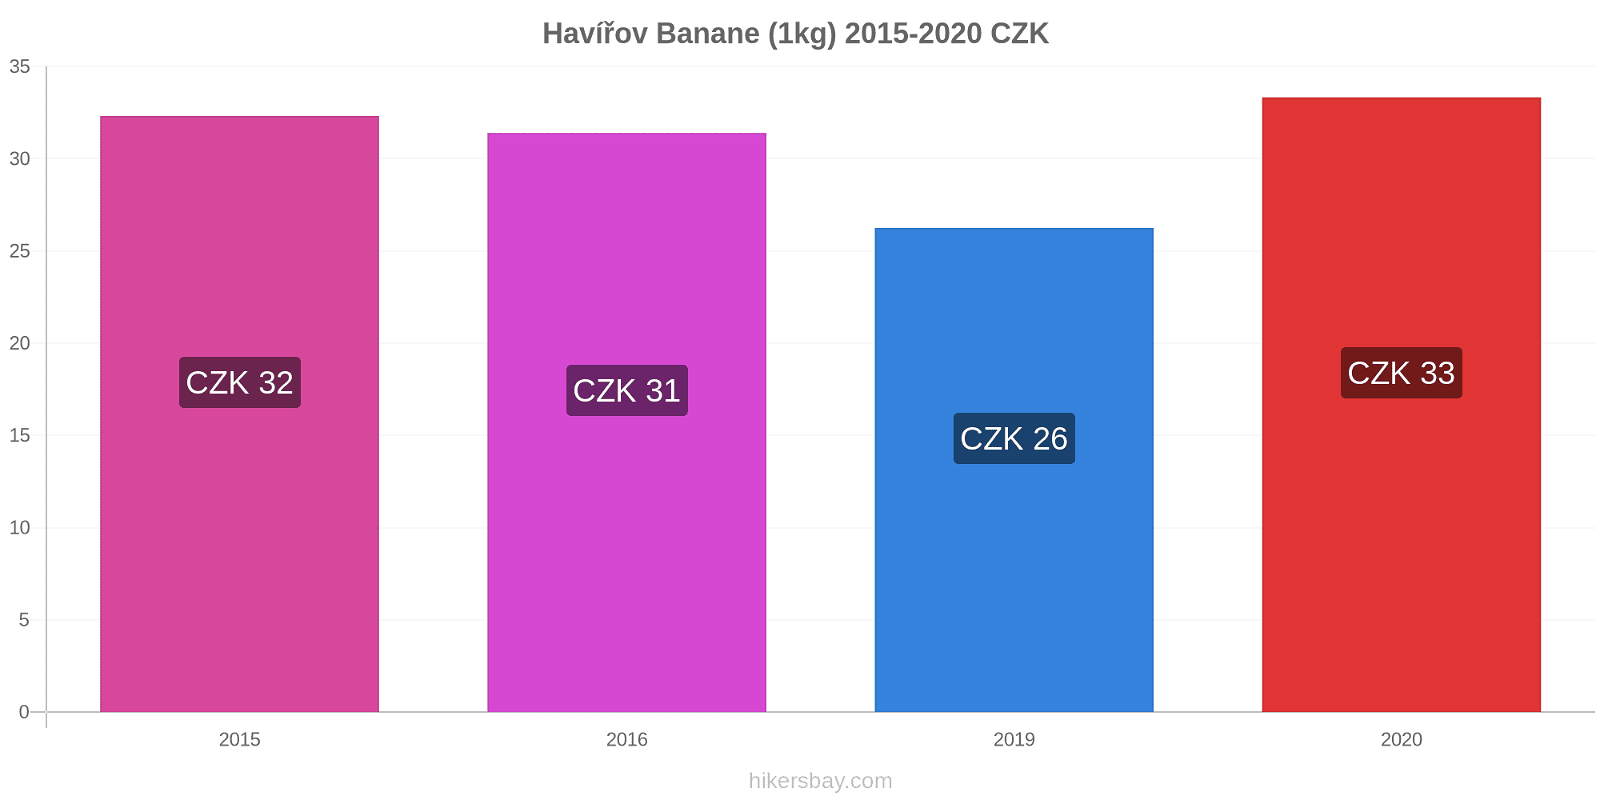 Havířov variazioni di prezzo Banana (1kg) hikersbay.com